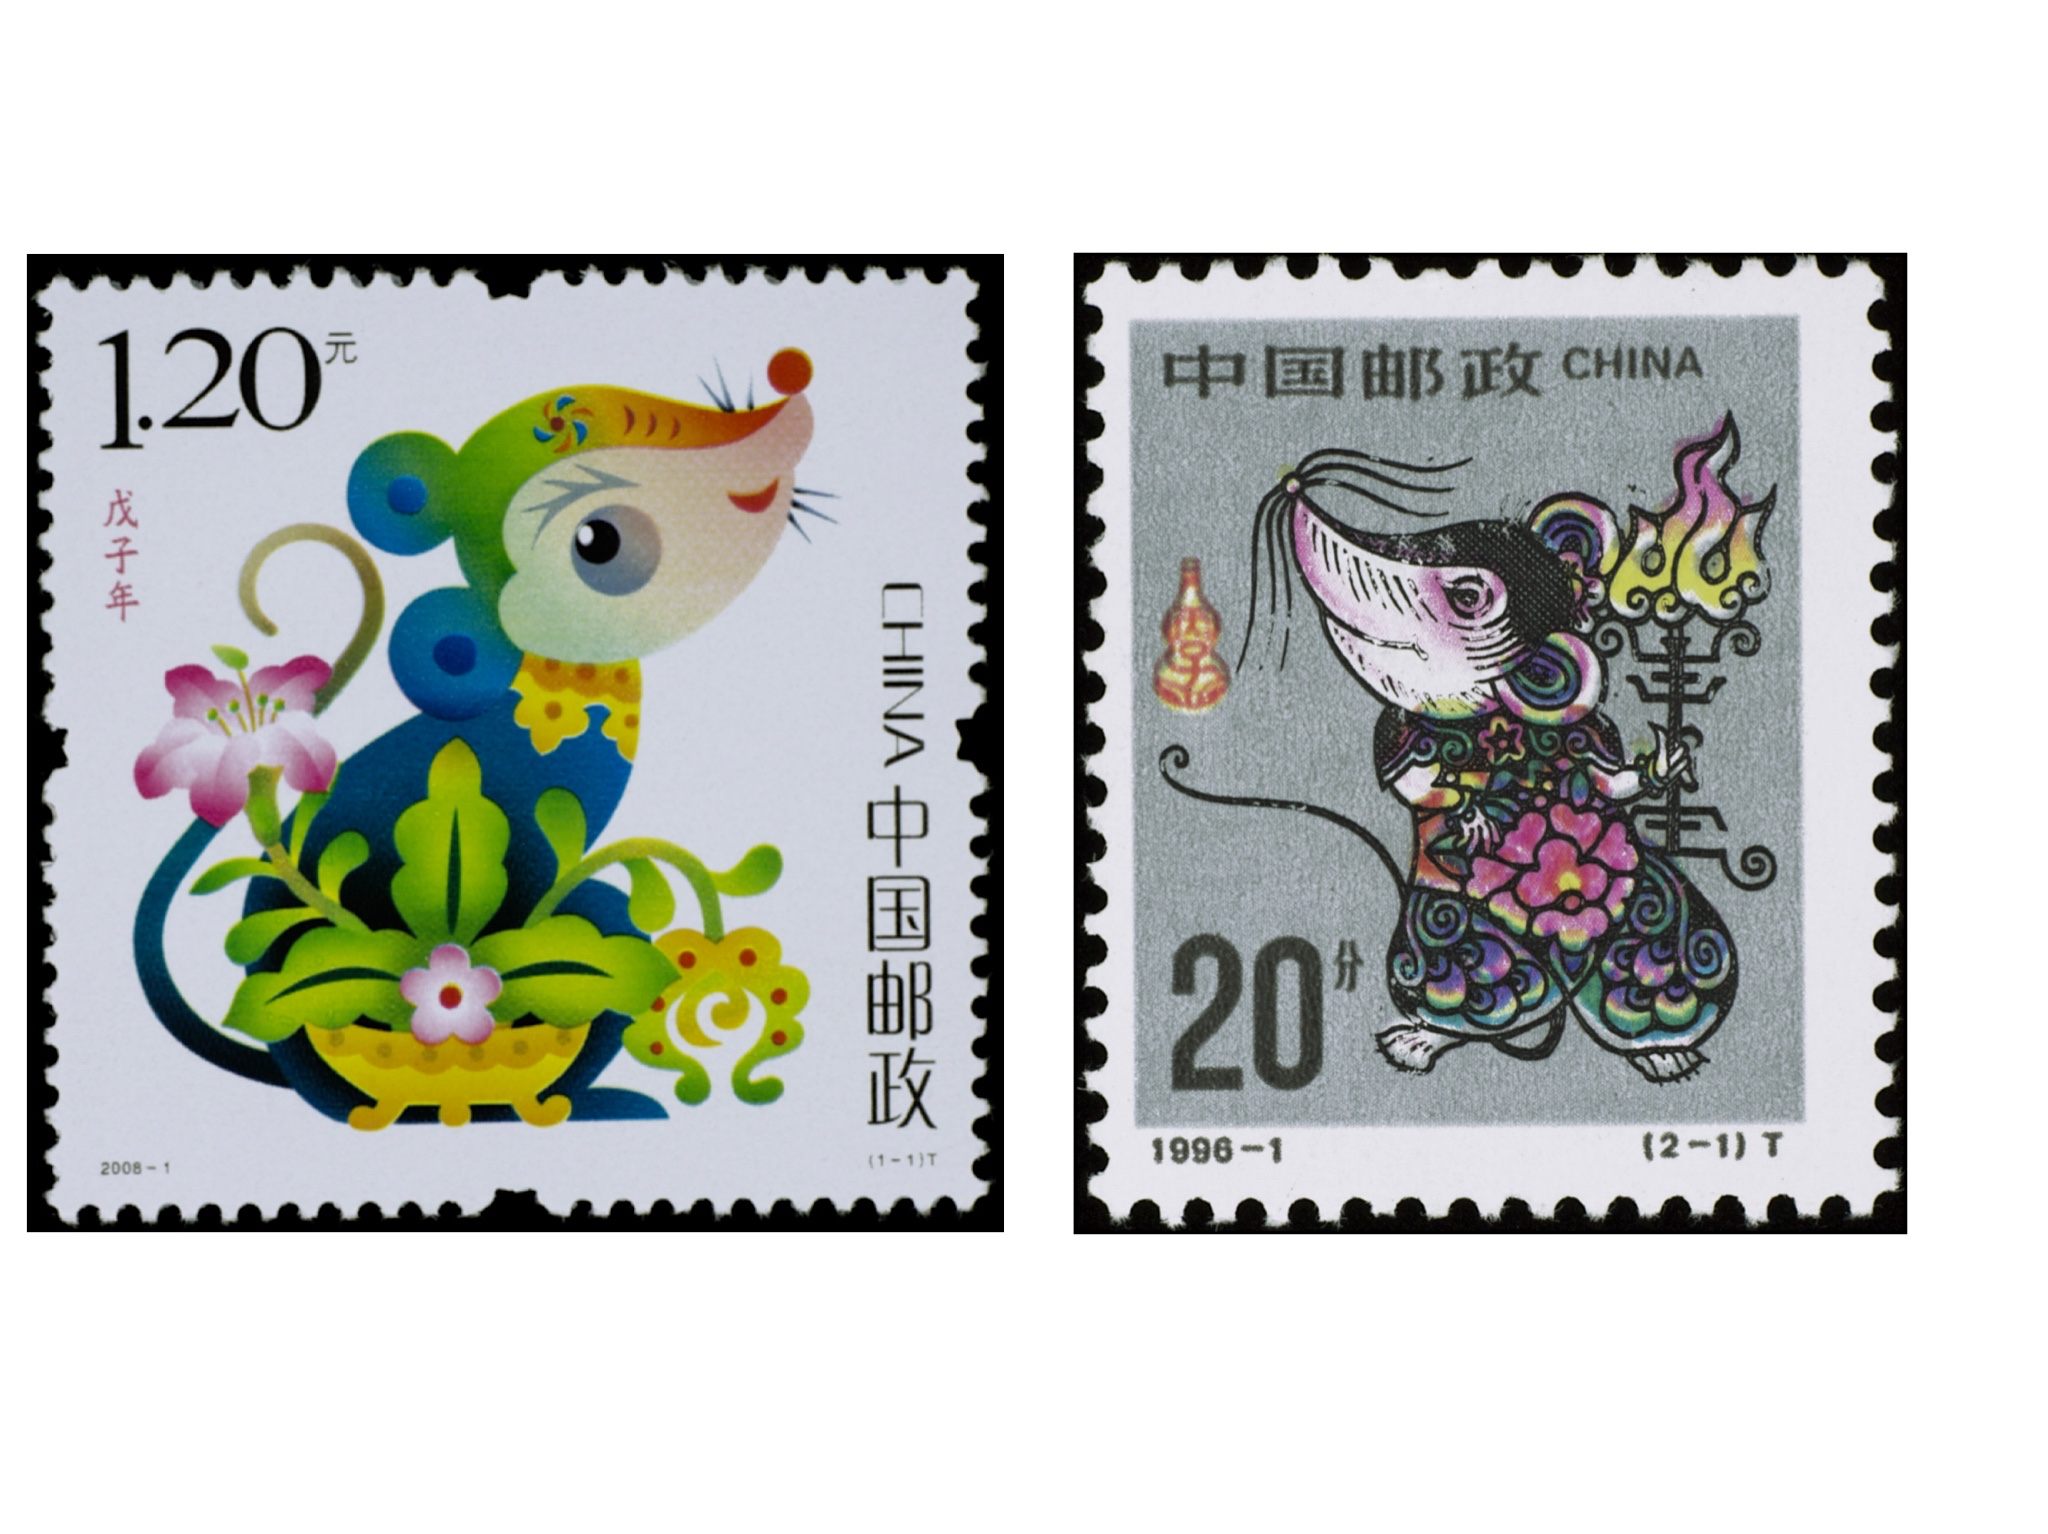 生肖邮票四十年 中国邮政鼠年生肖文创大赛